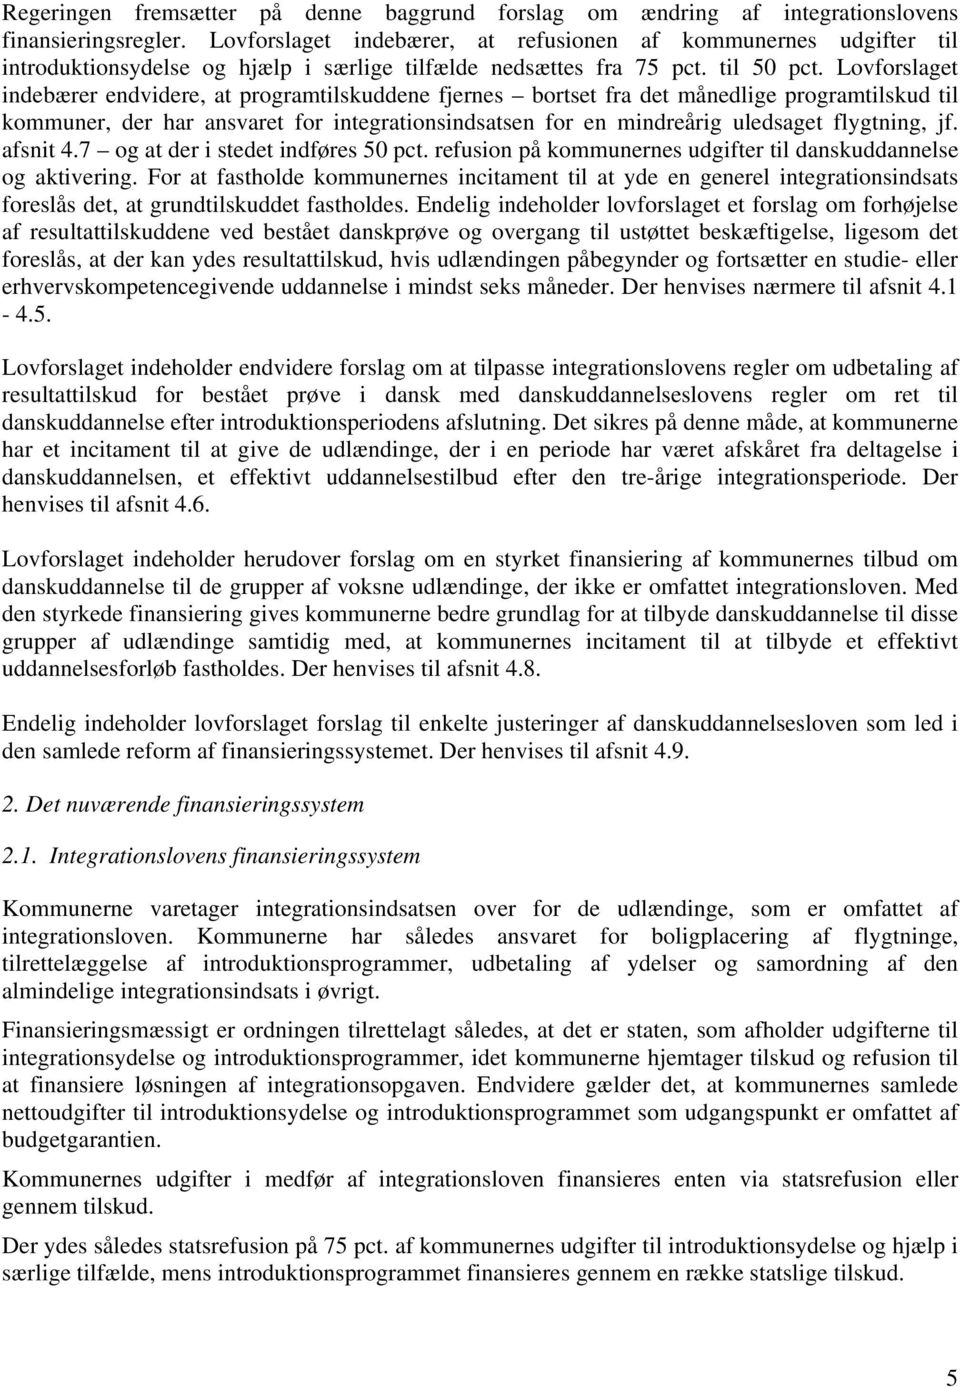 Lov om ændring af integrationsloven og lov om danskuddannelse til voksne  udlændinge m.fl. - PDF Gratis download